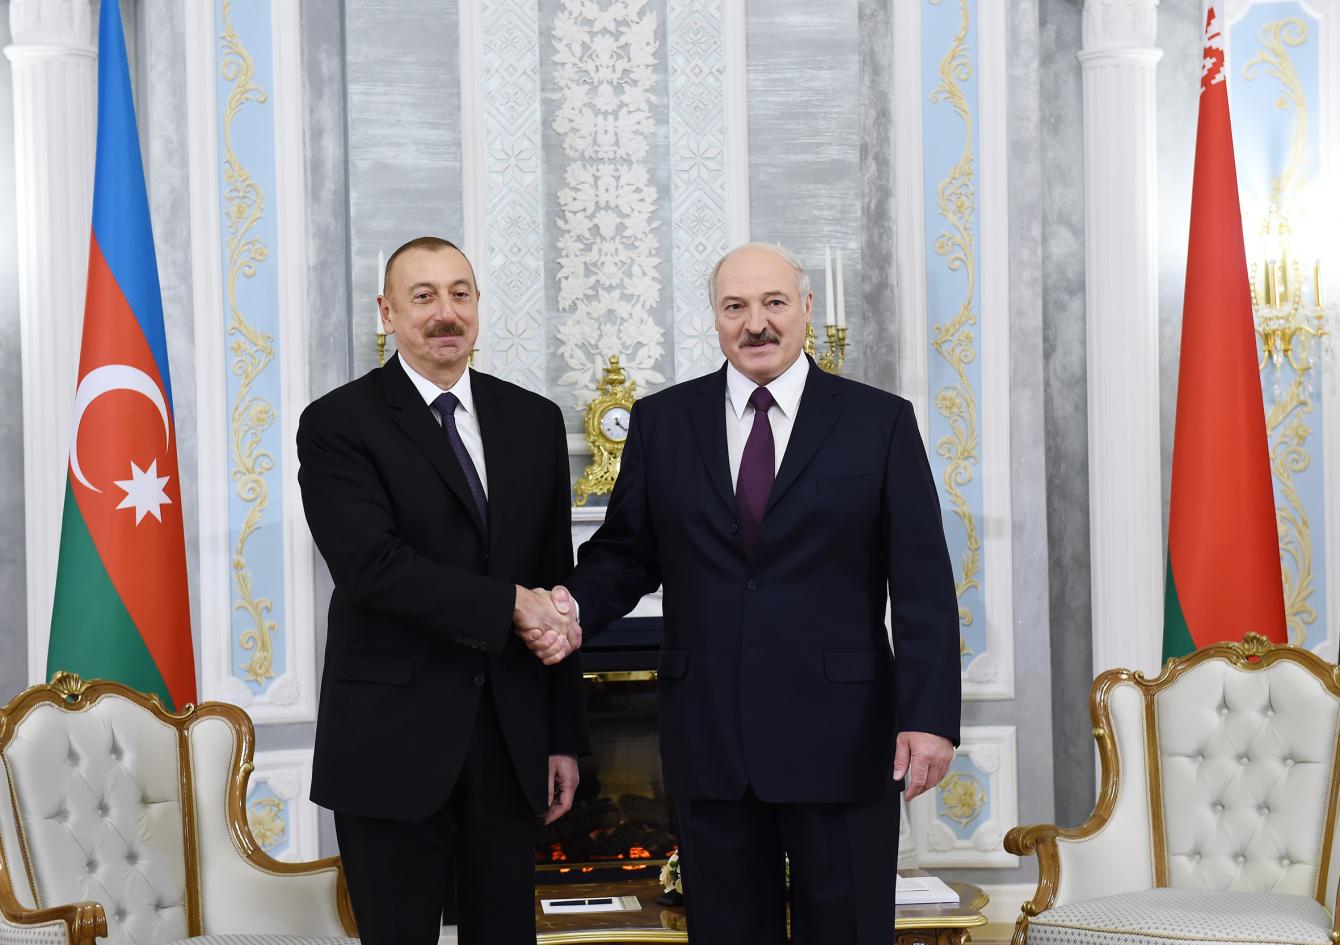 “Minsk və Bakının strateji tərəfdaşlığı bundan sonra da zənginləşəcək” – Lukaşenko